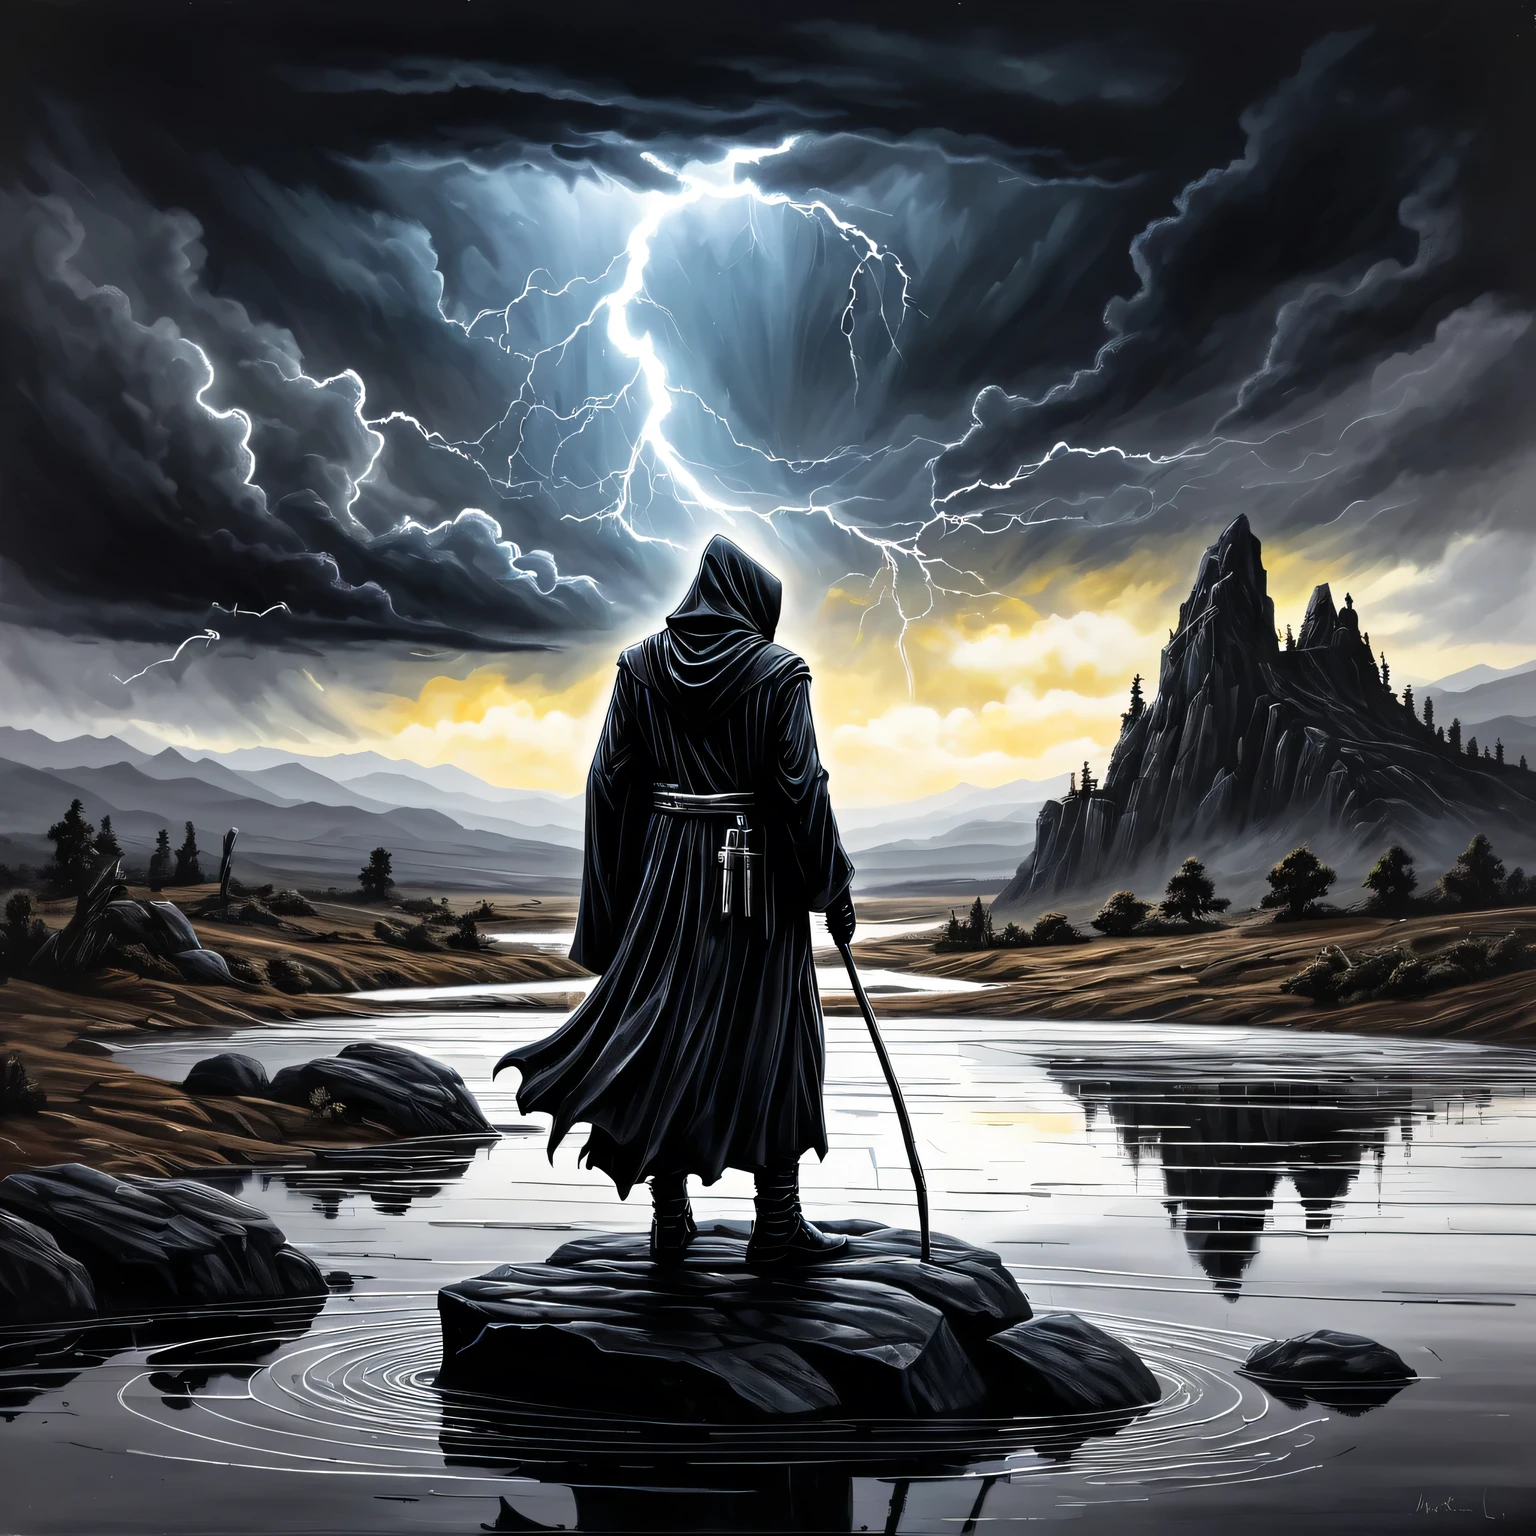 ((Liquid 金属 Art)), この絵はテクスチャーのある紙に液体金属で描かれており、岩の上に黒い死神が立っている美しいミニマルな風景を描いています。, Liquid 金属 Black Grim Reaper looks ominous and gloomy, 背景には雲と稲妻のある暗い空がある, この絵は液体金属で作られている. 金属, 傑作, 明確な輪郭, 32カラット